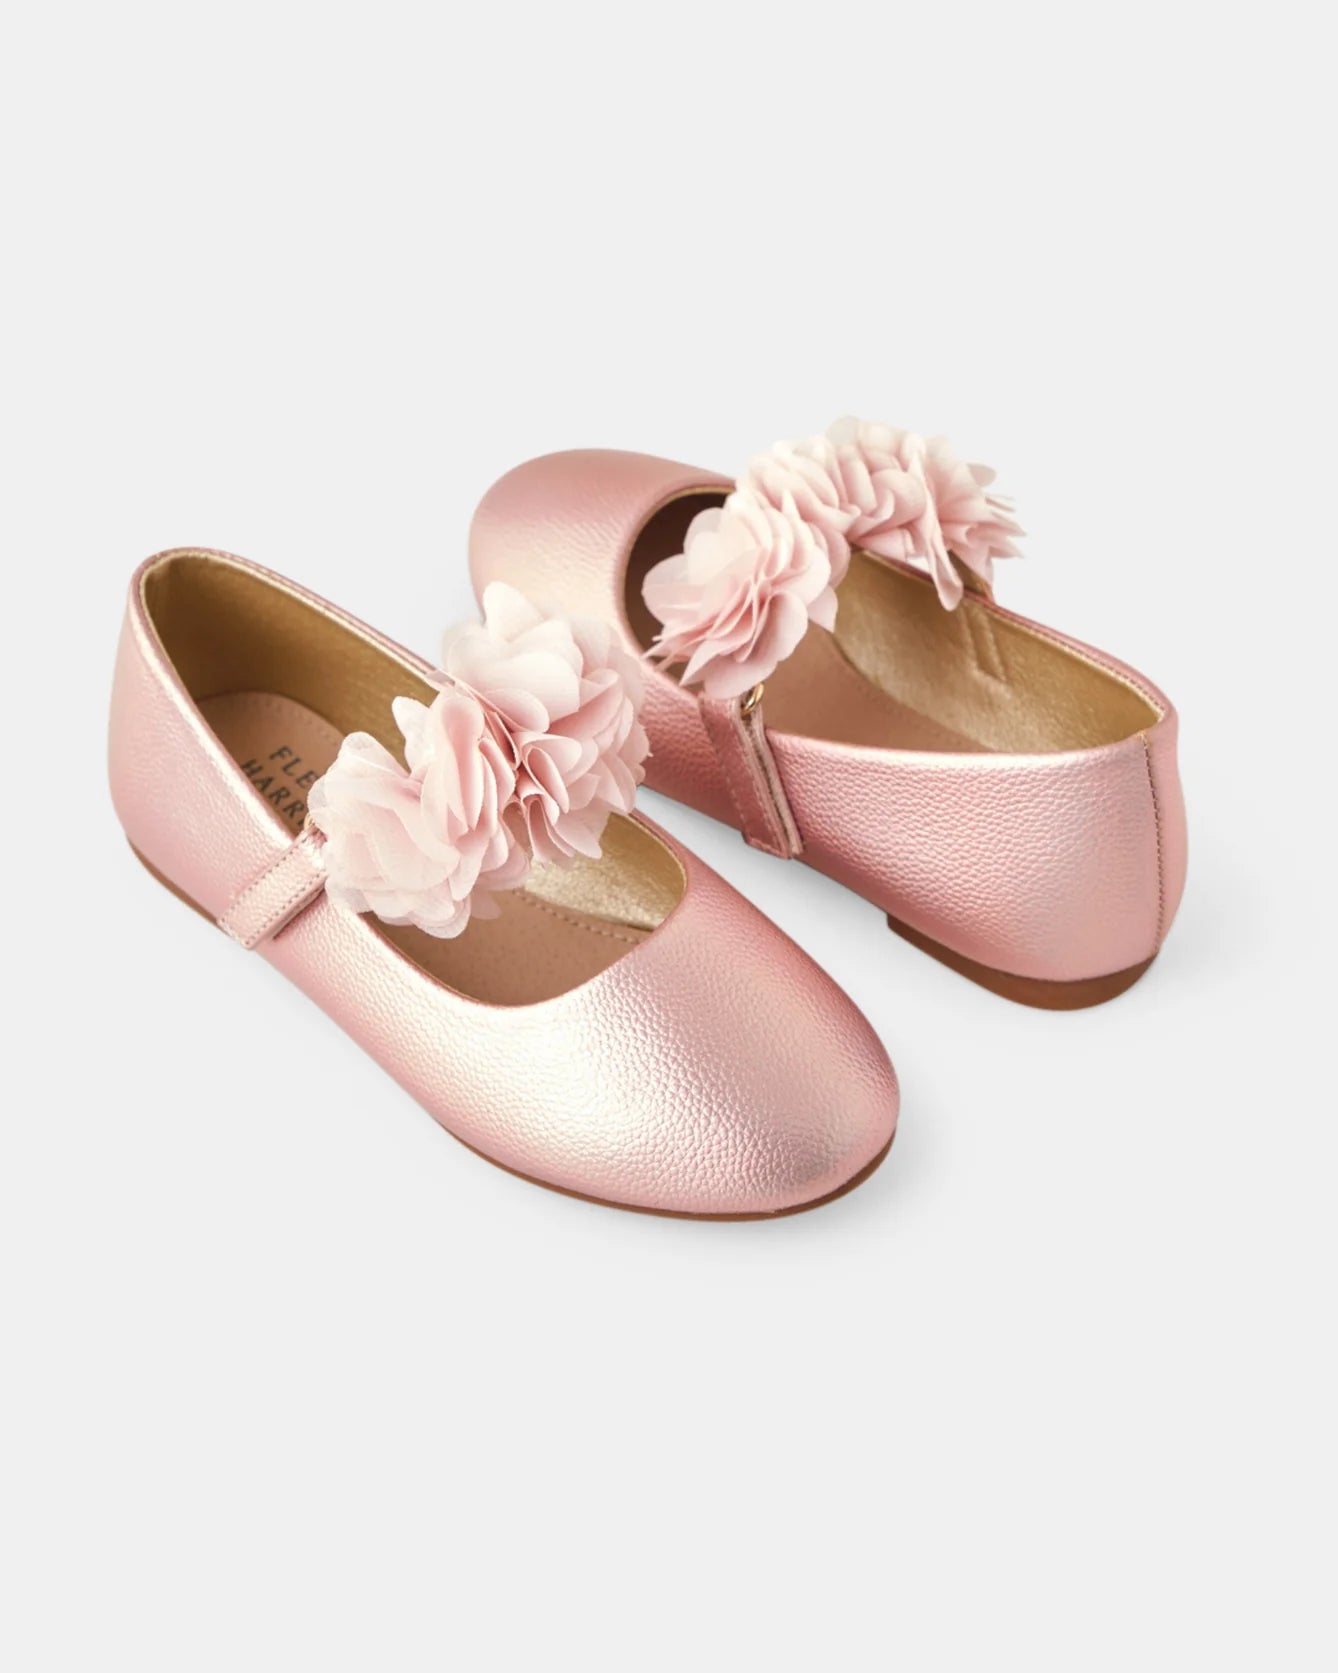 DAHLIA BALLET FLAT - WALNUT MELBOURNE - ballet, kids footwear, kids shoes - Stomp Shoes Darwin